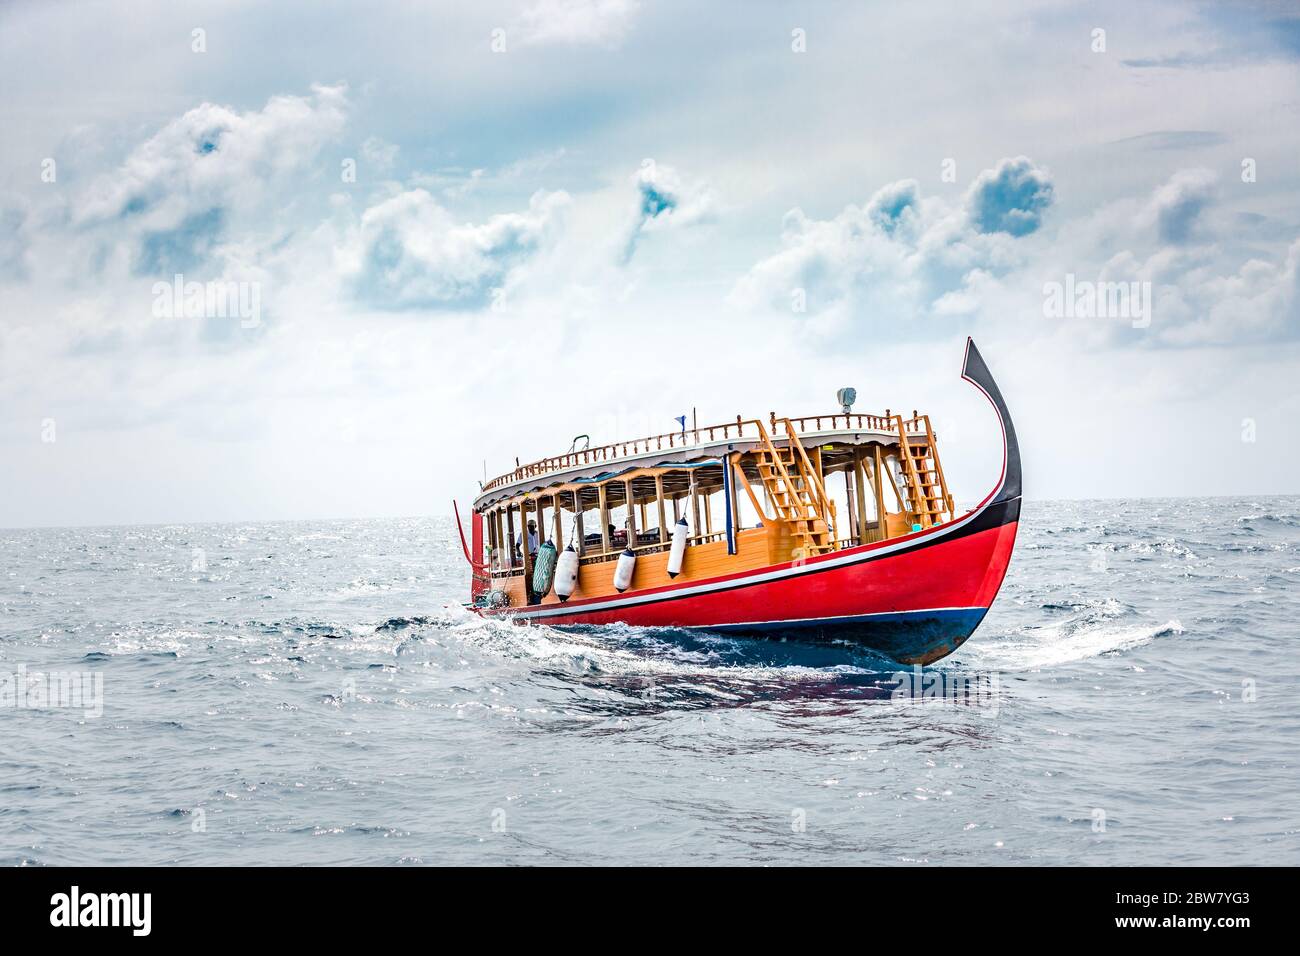 Wunderbares maledivisches Boot Dhoni auf tropischem blauem Meer, mit Touristen zum Schnorcheln und Tauchen, um die Unterwasserwelt zu sehen Stockfoto